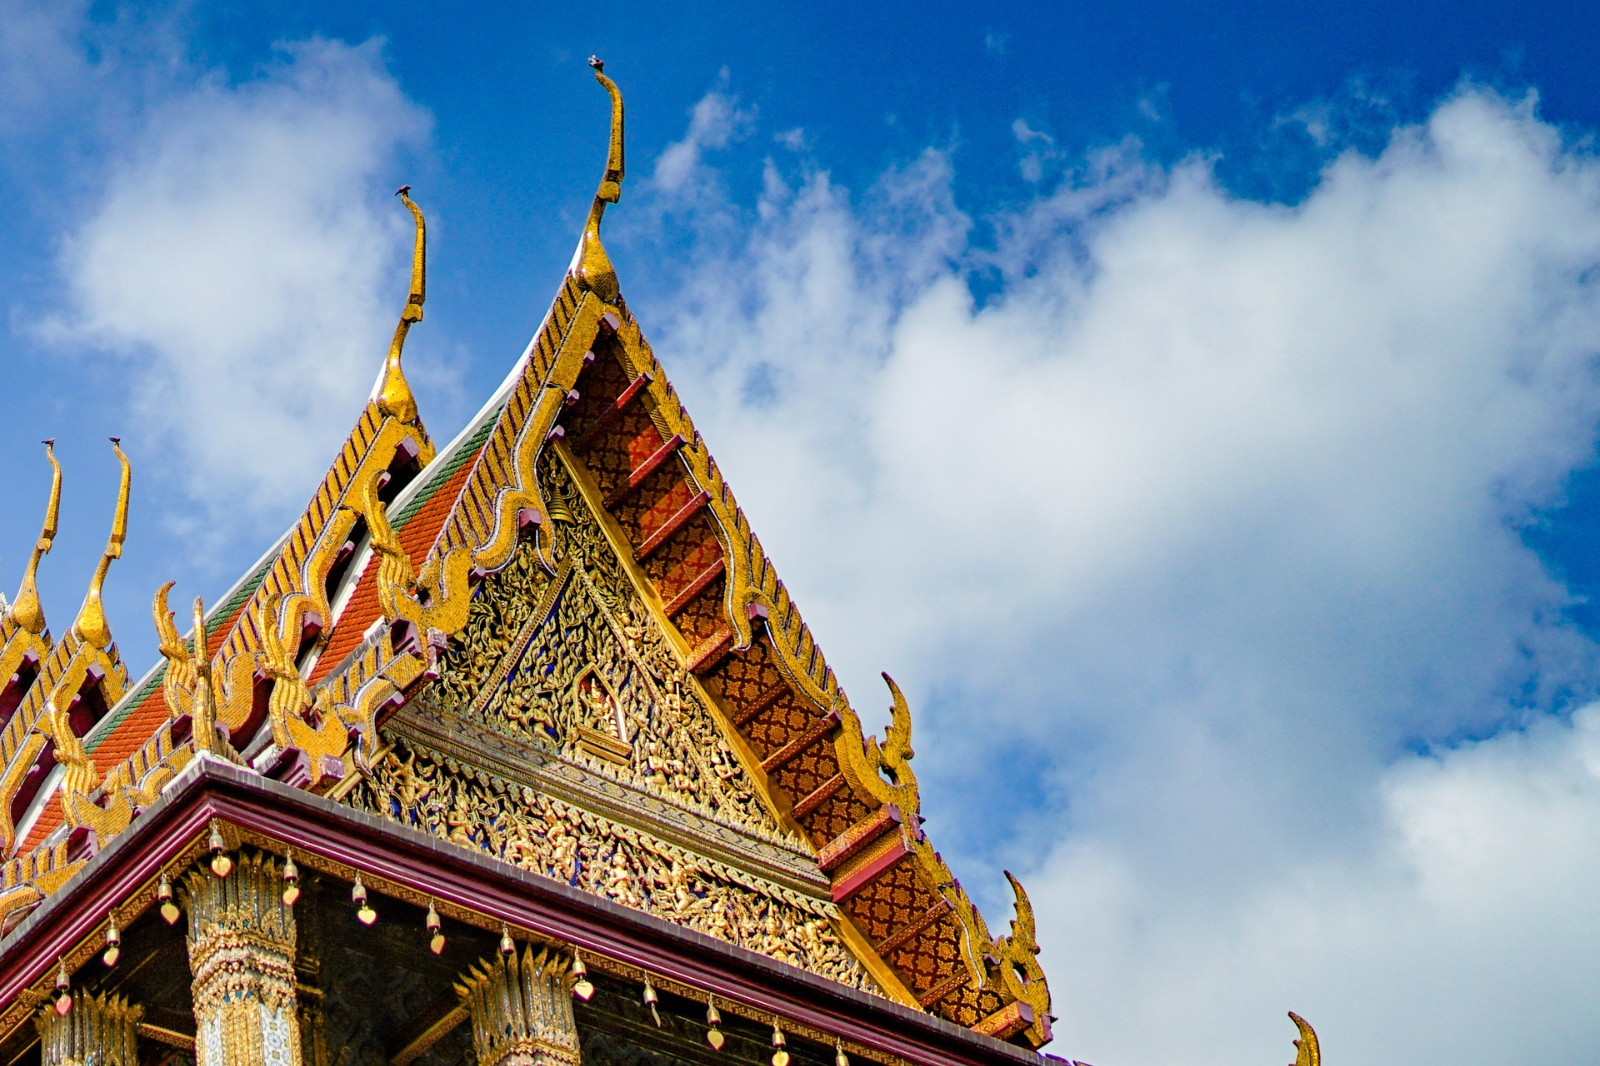 泰国今年前5个月已接待超过100万中国游客